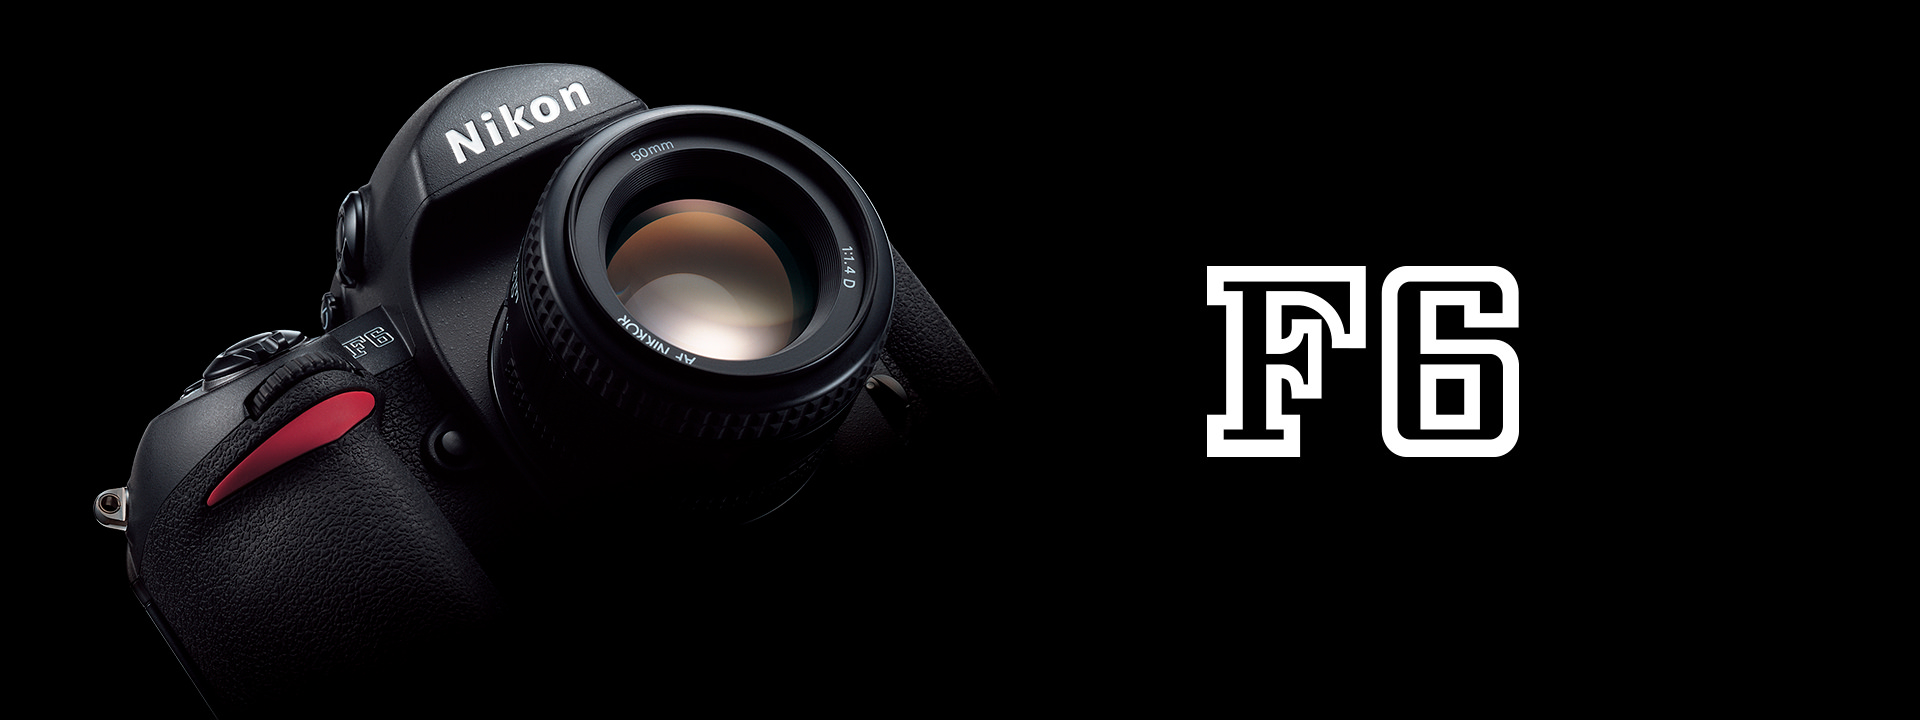 F6 - 概要 | 一眼レフカメラ | ニコンイメージング